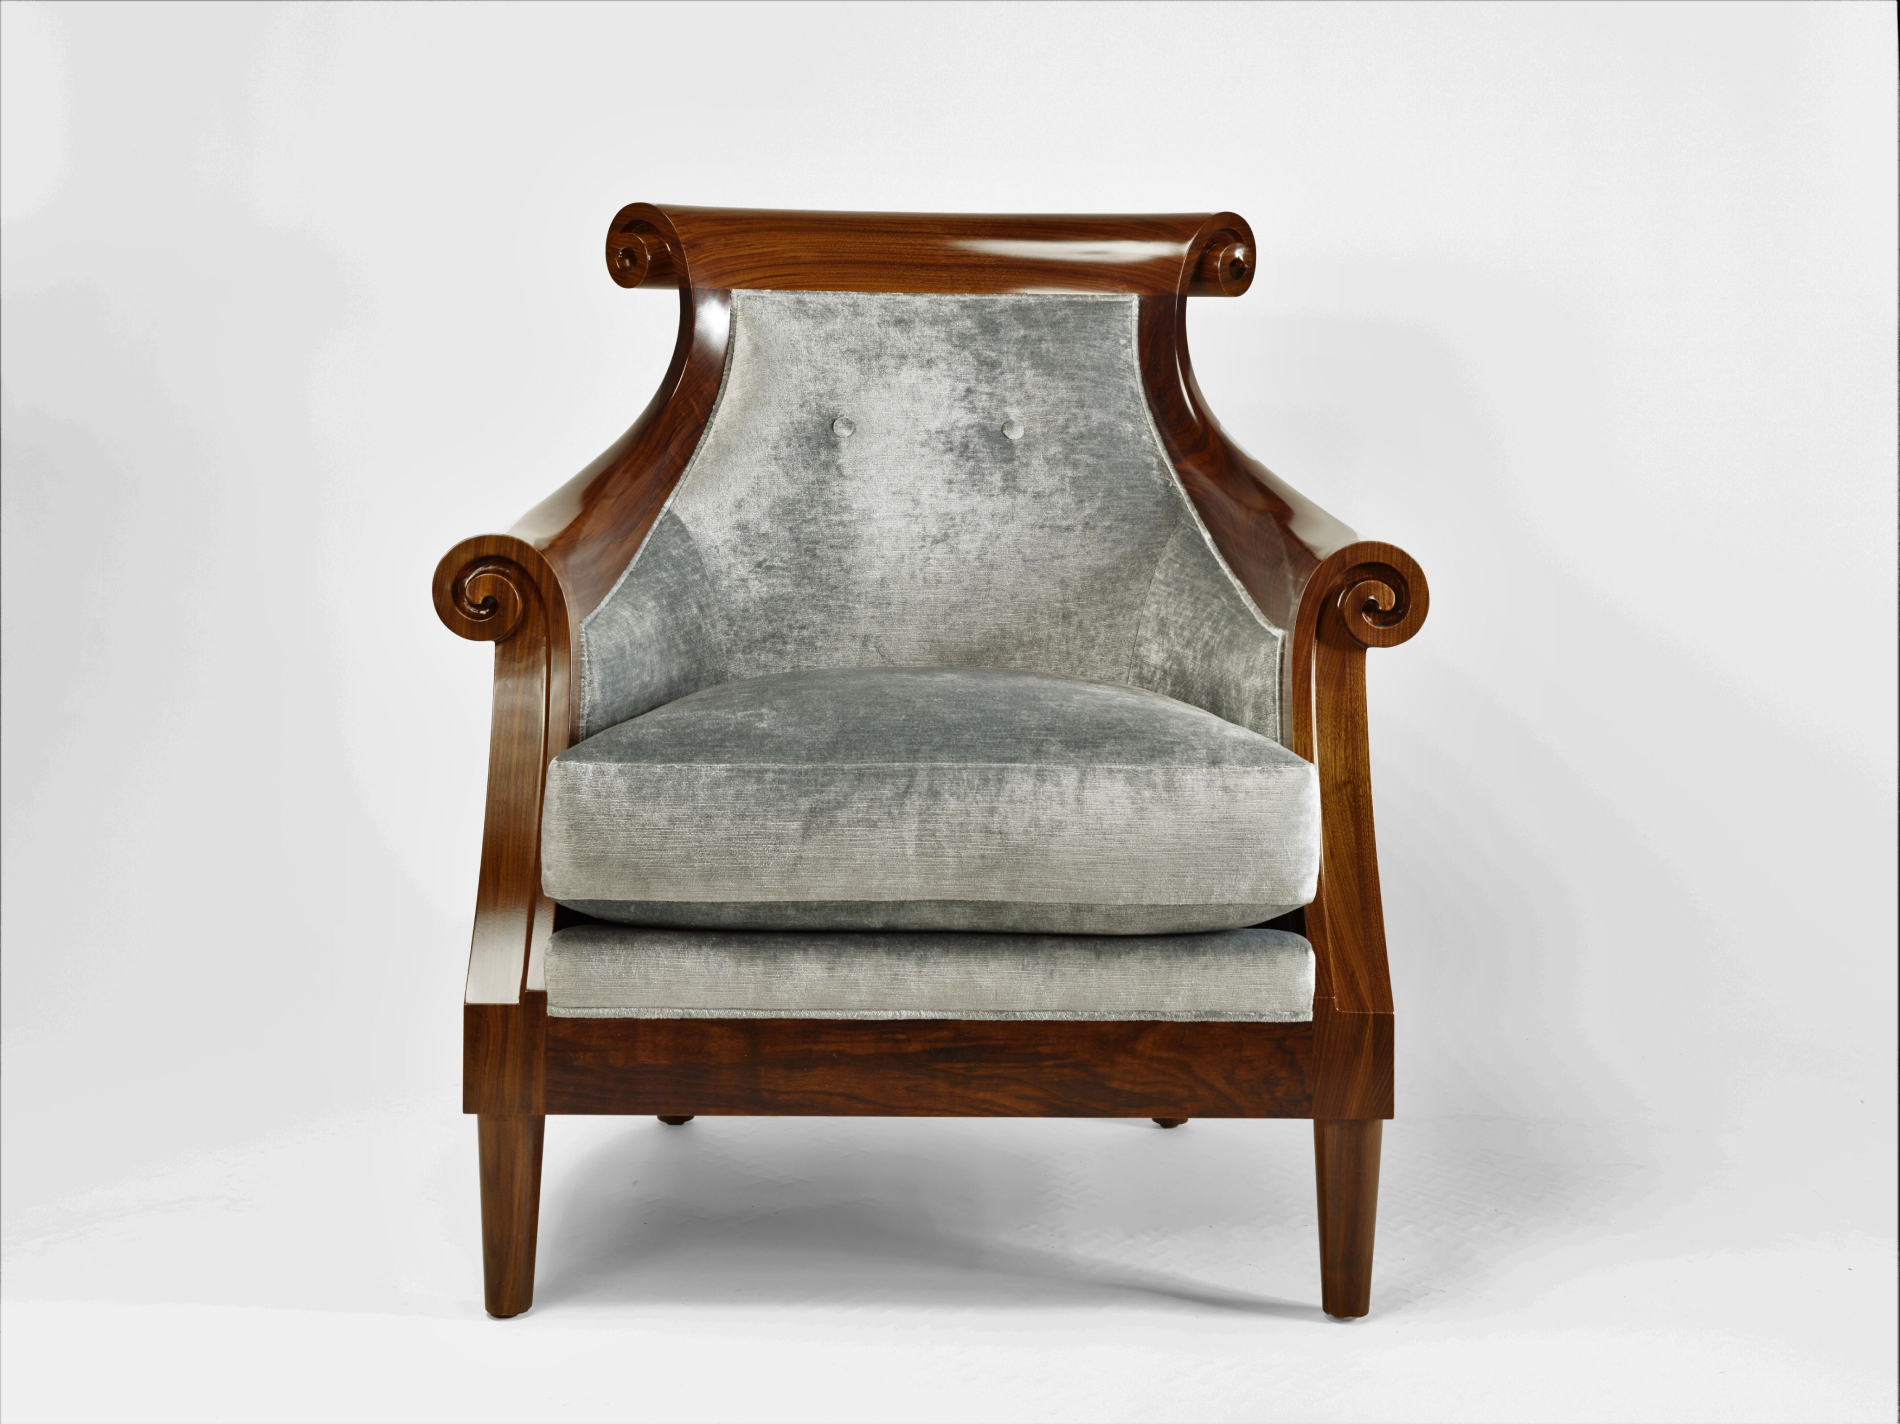 The Heatley Lounge Chair — SOLO by Allan Switzer